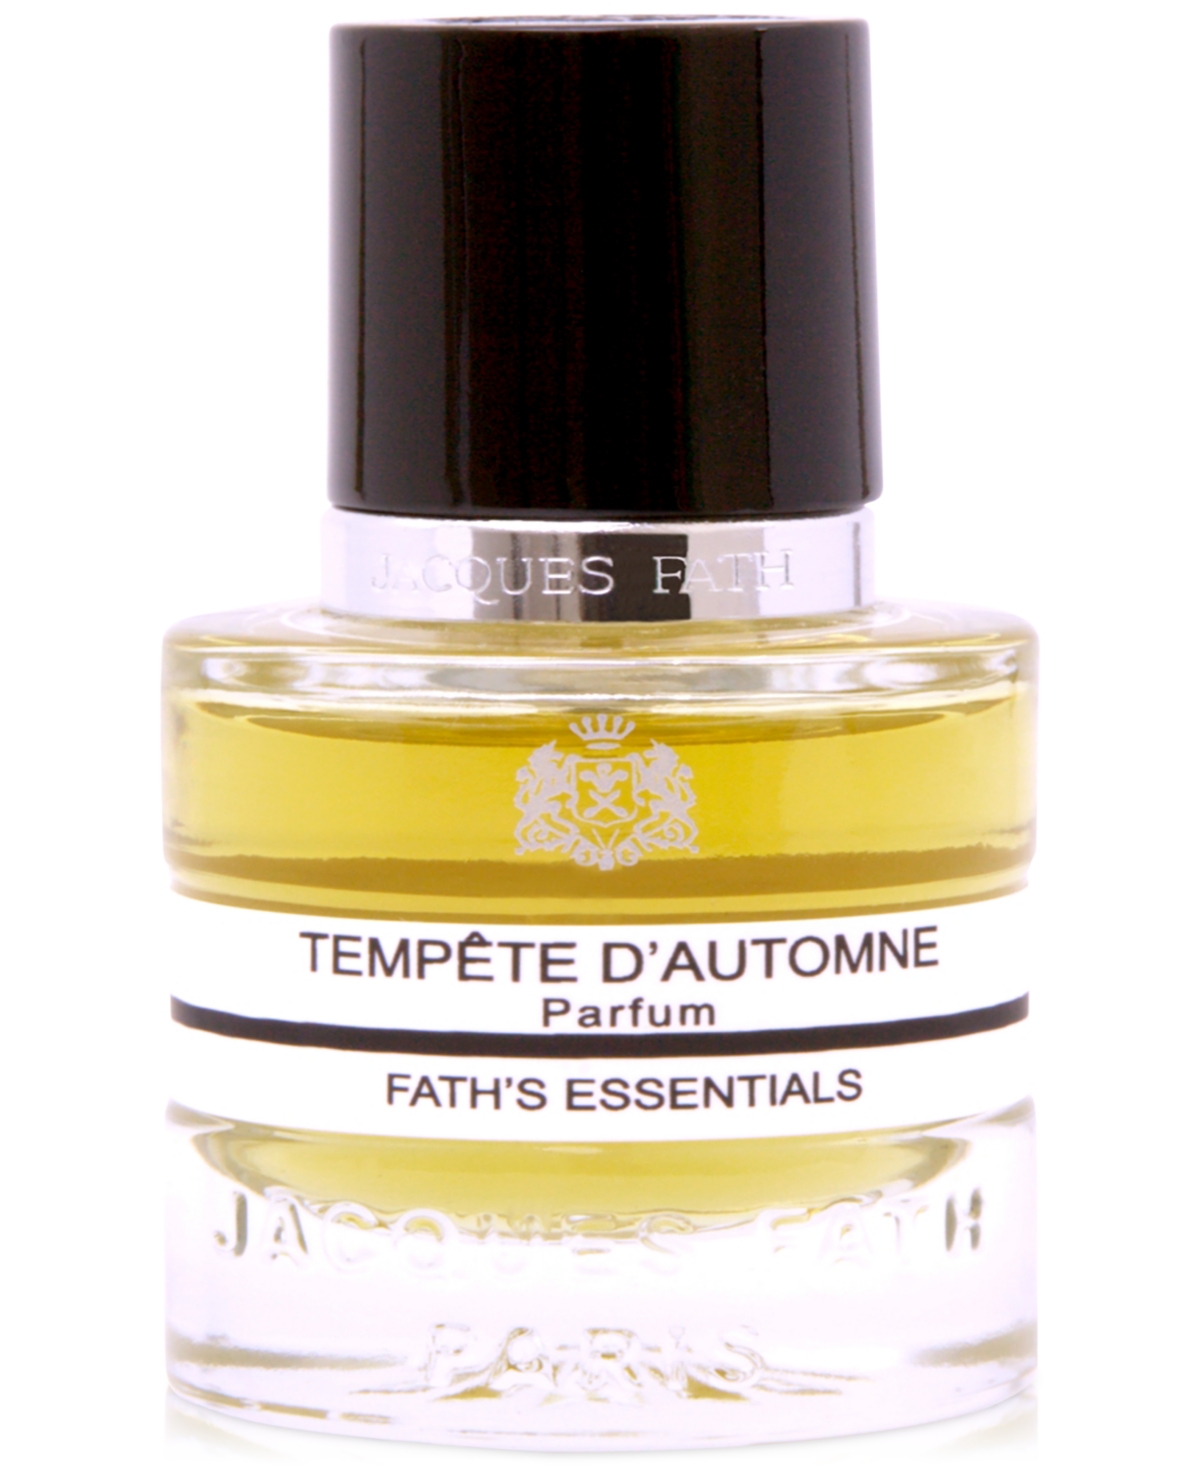 Tempete d'Automne Parfum, 0.5 oz.